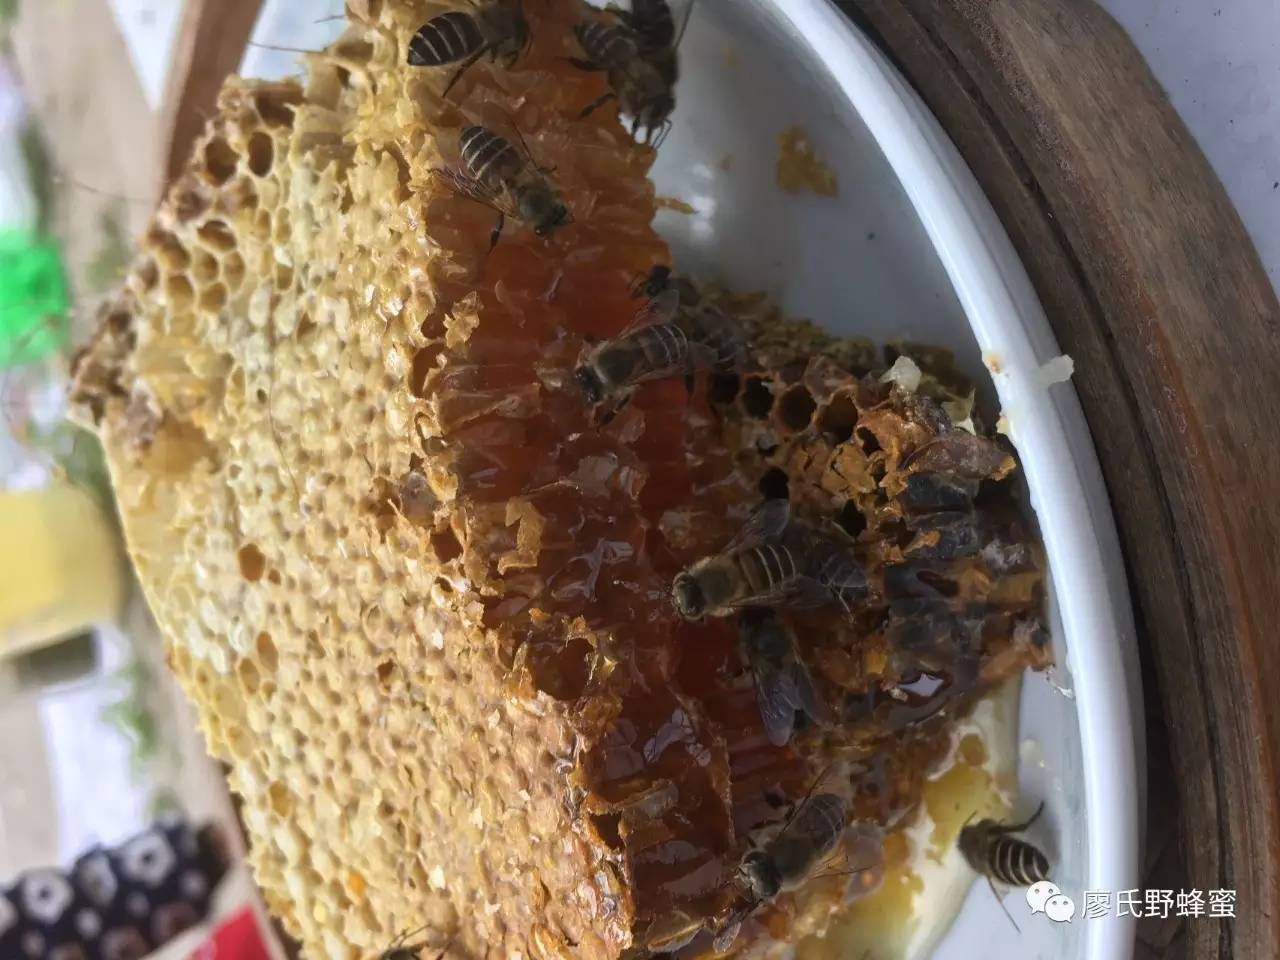 油菜花蜂蜜价格 蜂蜜制作面膜 蜂蜡价格 牛奶蜂蜜面膜怎么做 蜂蜜什么牌子最好